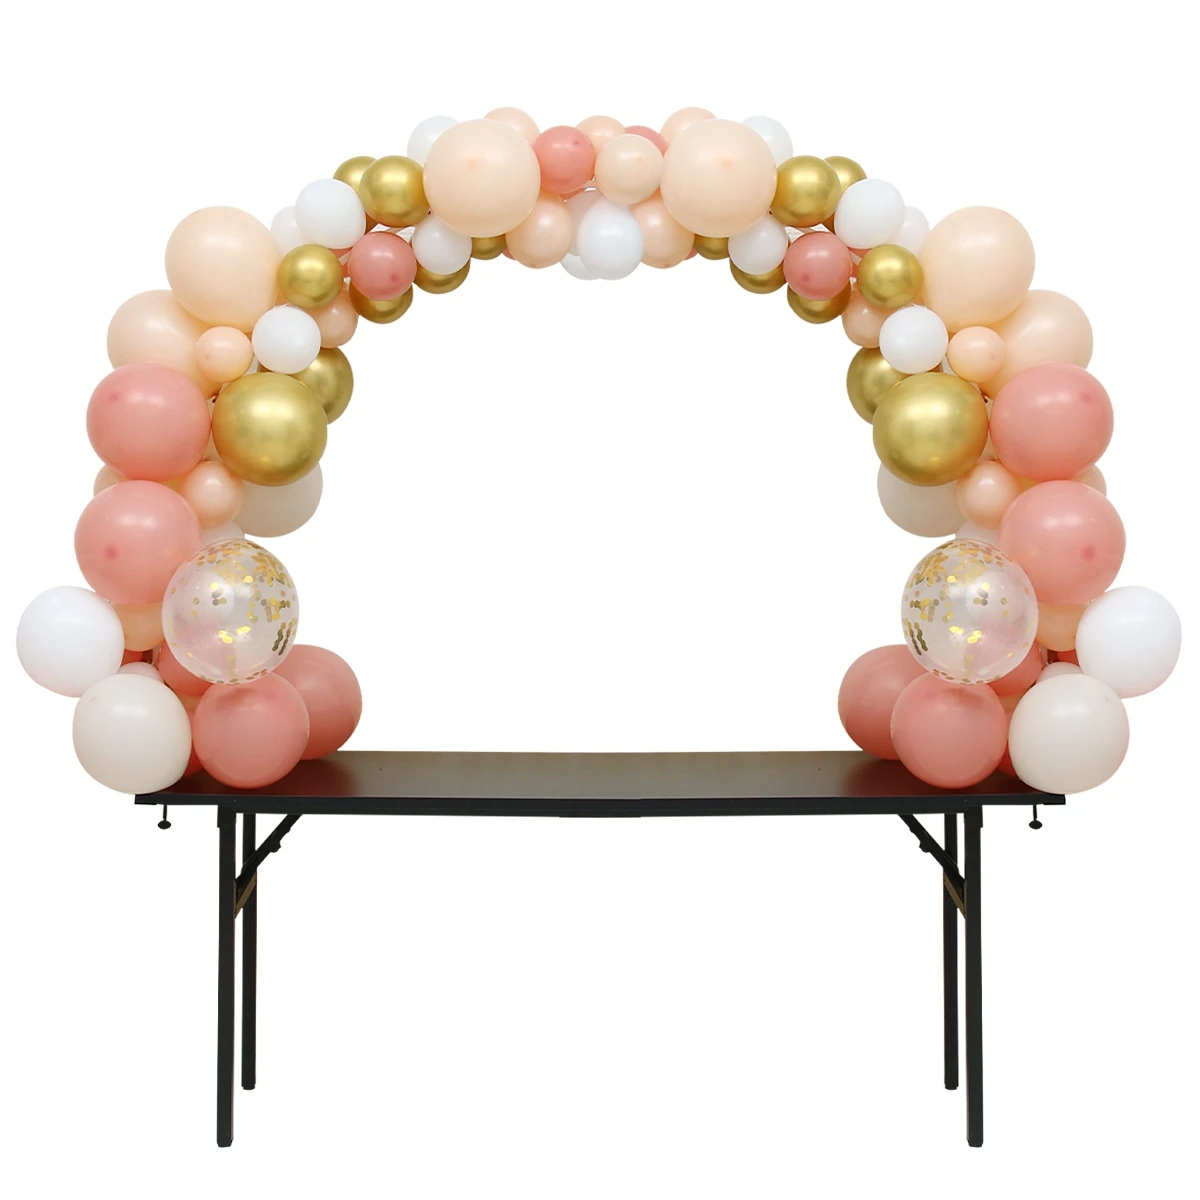 arco de mesa ajustável arco do balão suporte suporte balão arco kit coluna festa de aniversário casamento decoração do chuveiro do bebê